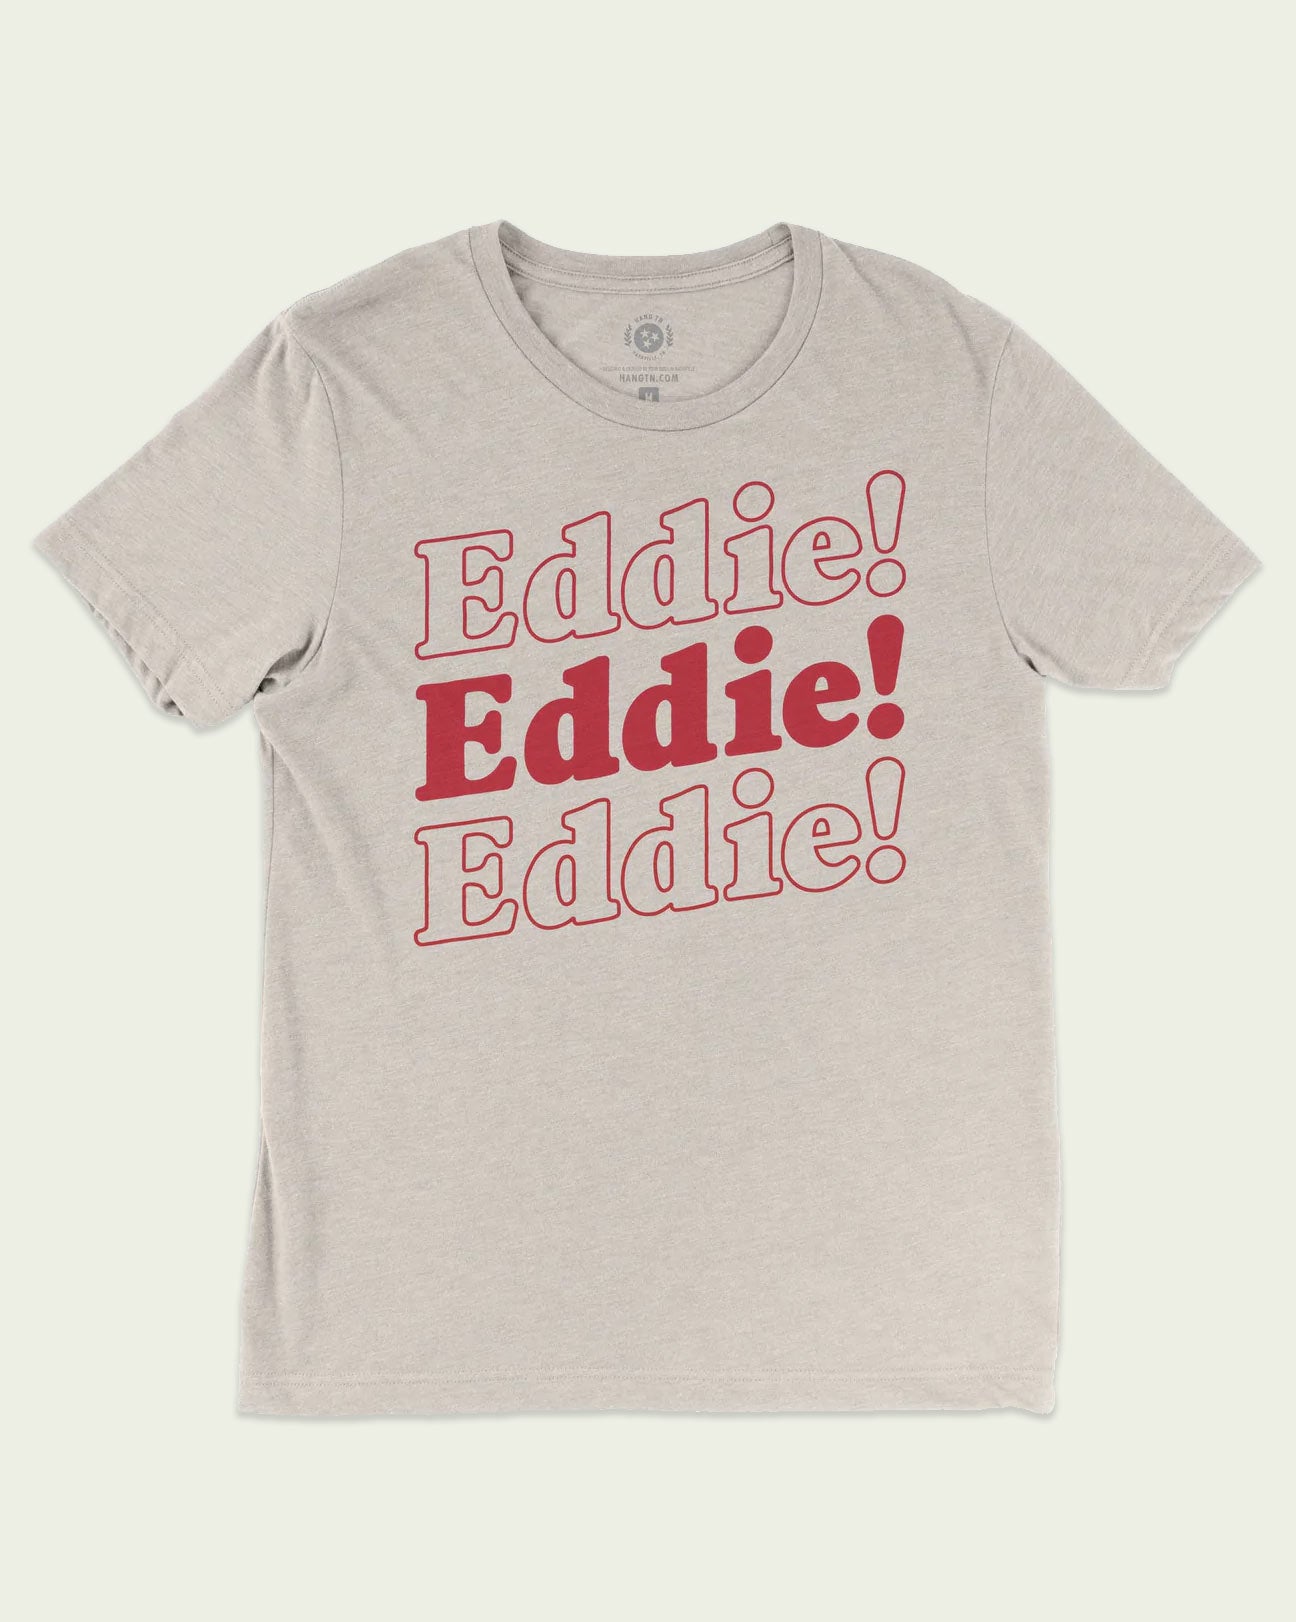 Eddie! Eddie! Eddie!